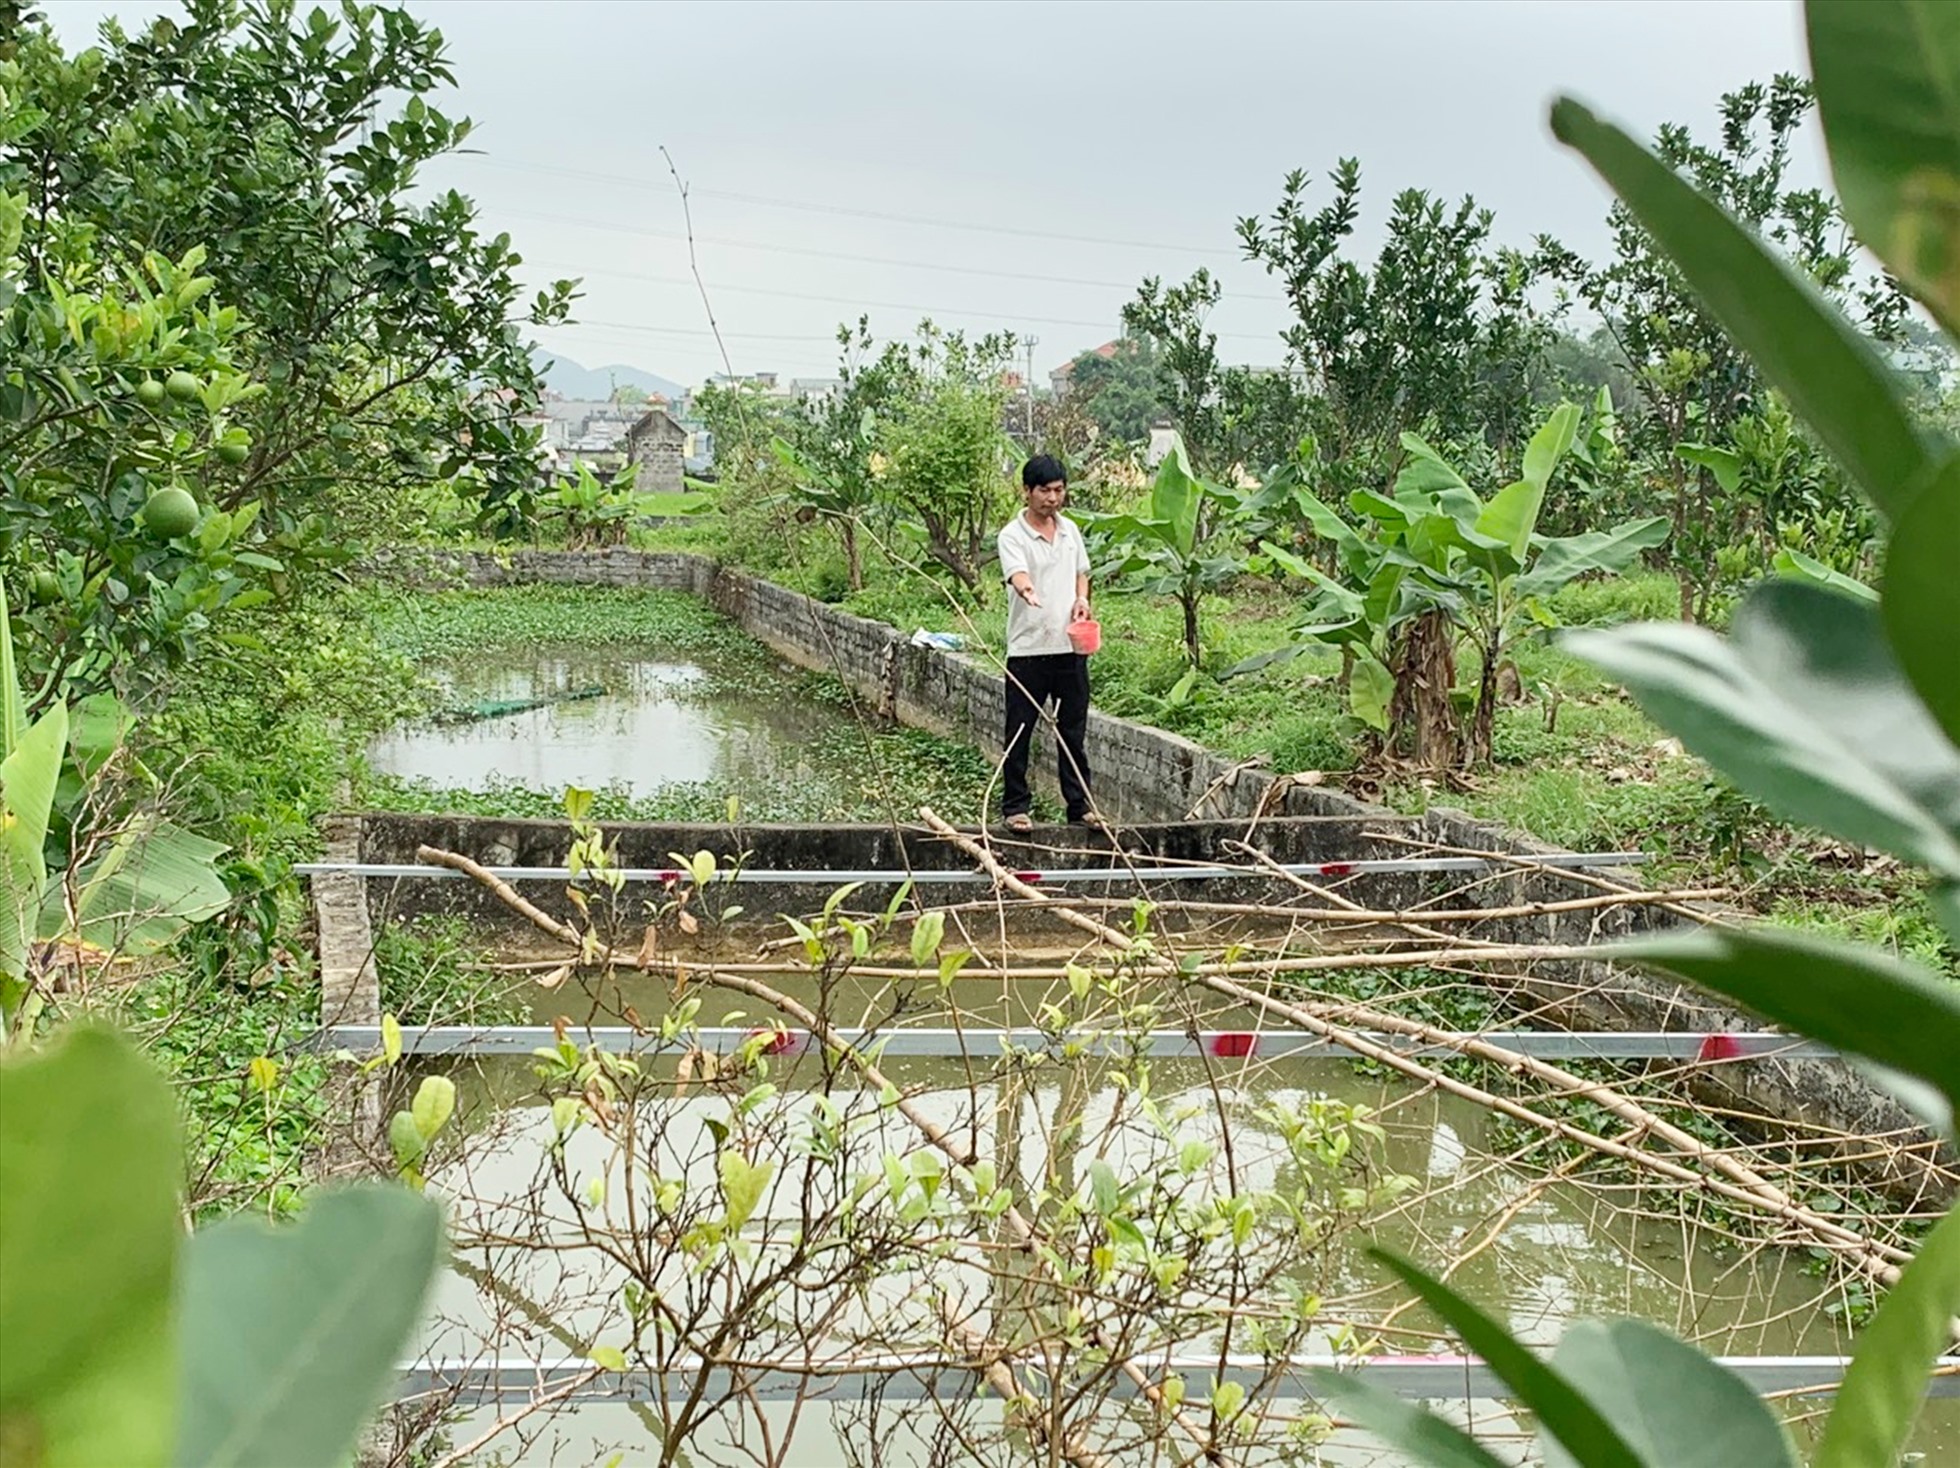 Mô hình trang trại đa canh của anh Vũ Ngọc Tú ở thôn Nham Tràng, xã Thanh Tân, huyện Thanh Liêm. Ảnh: NHCSXH